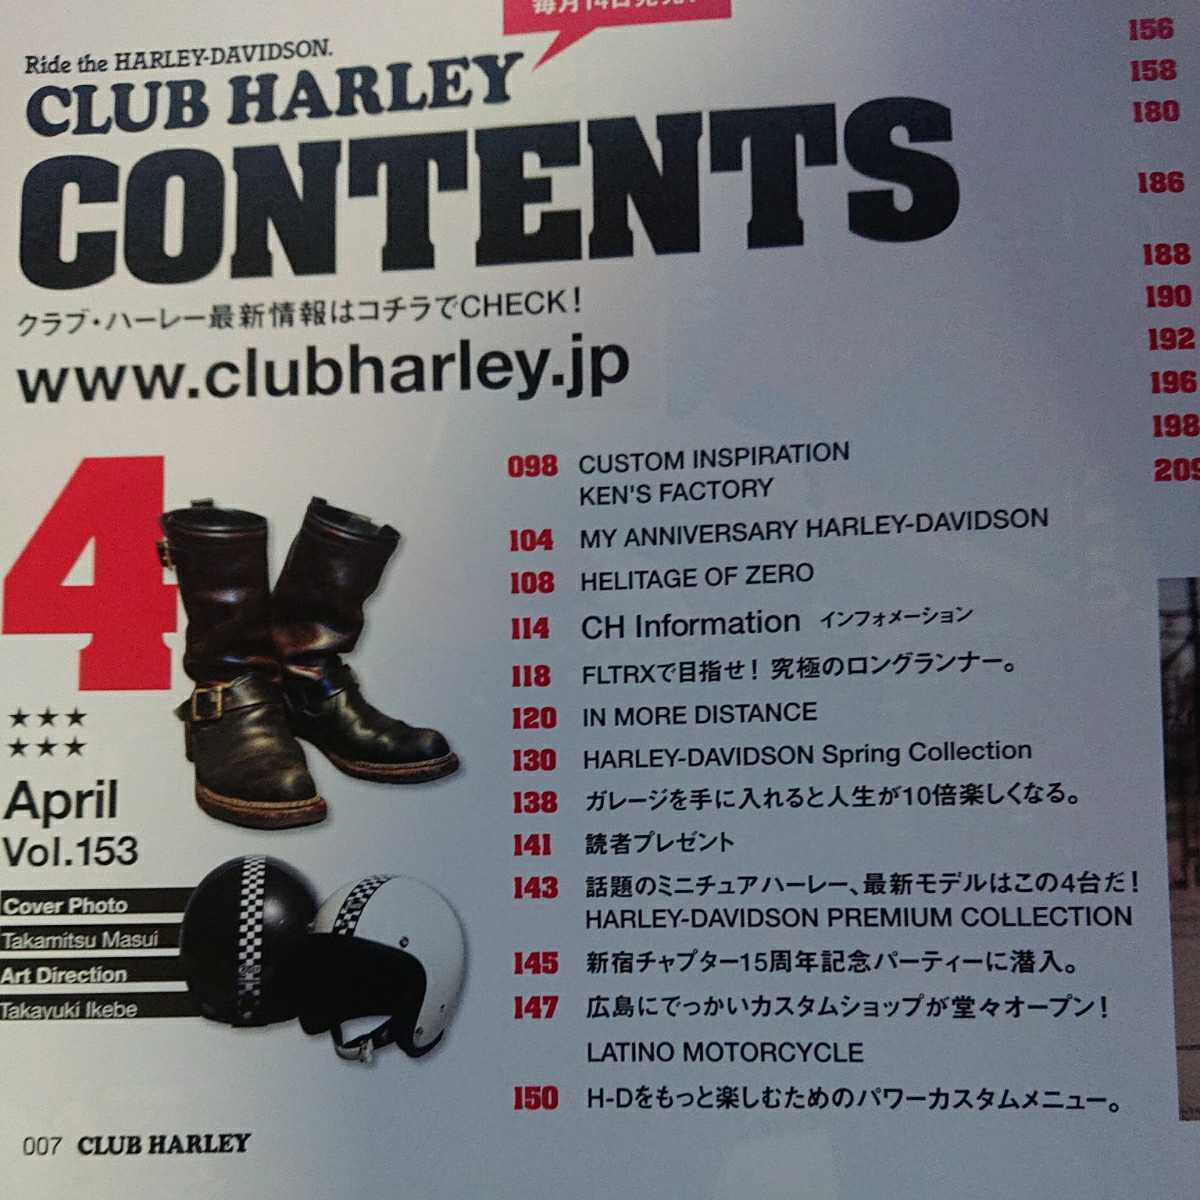 クラブ・ハーレー(CLUB HARLEY) 2013年04月号 特別付録「稲妻フェスティバルWEST 公式ガイドブック」はありません。